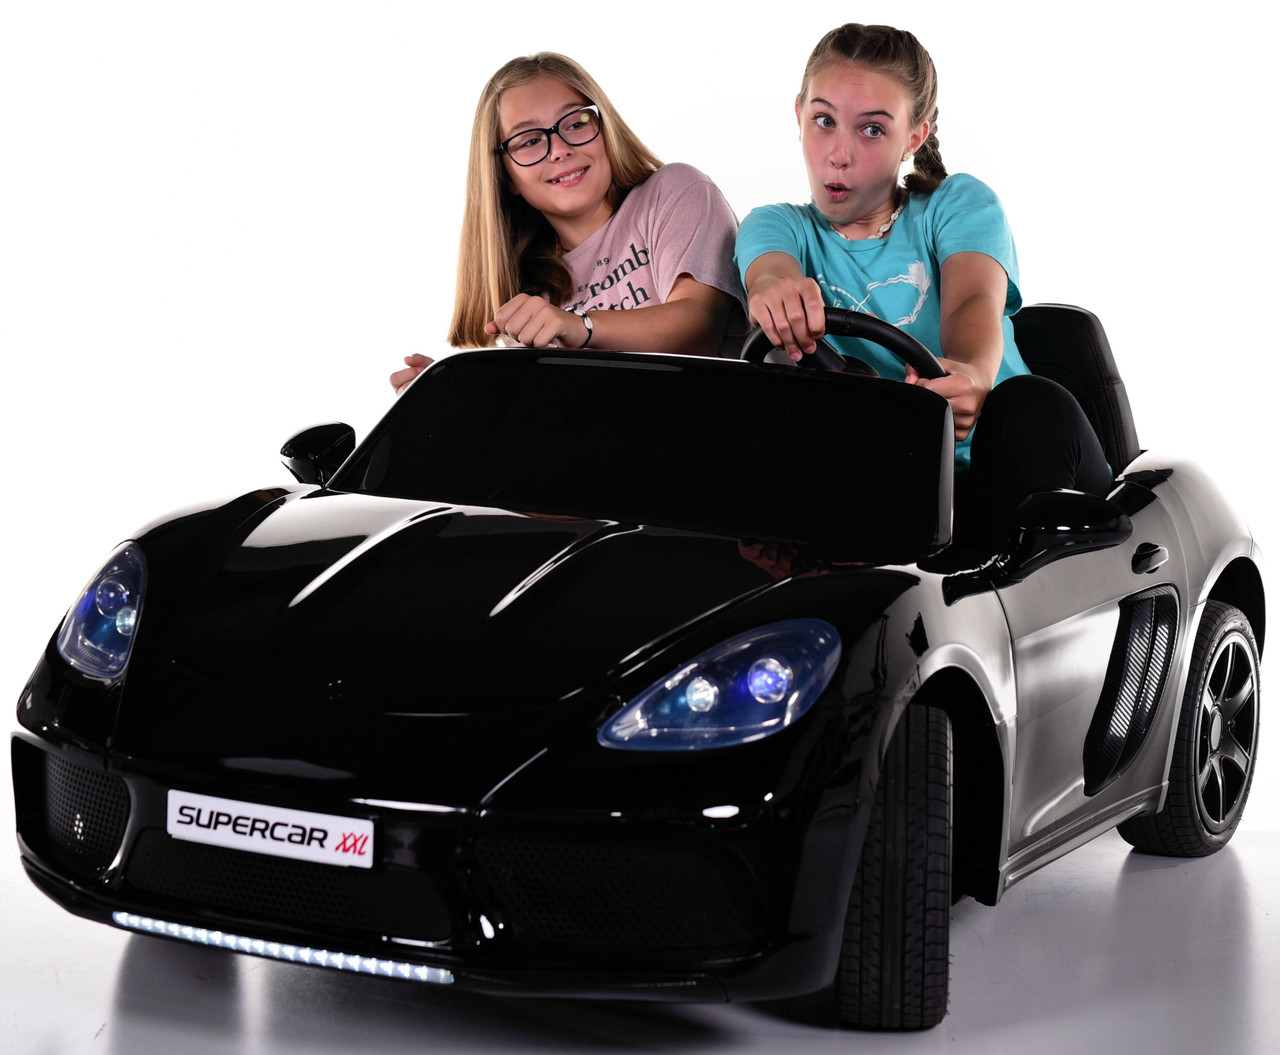 24 v super sport xxl ride on kids car 